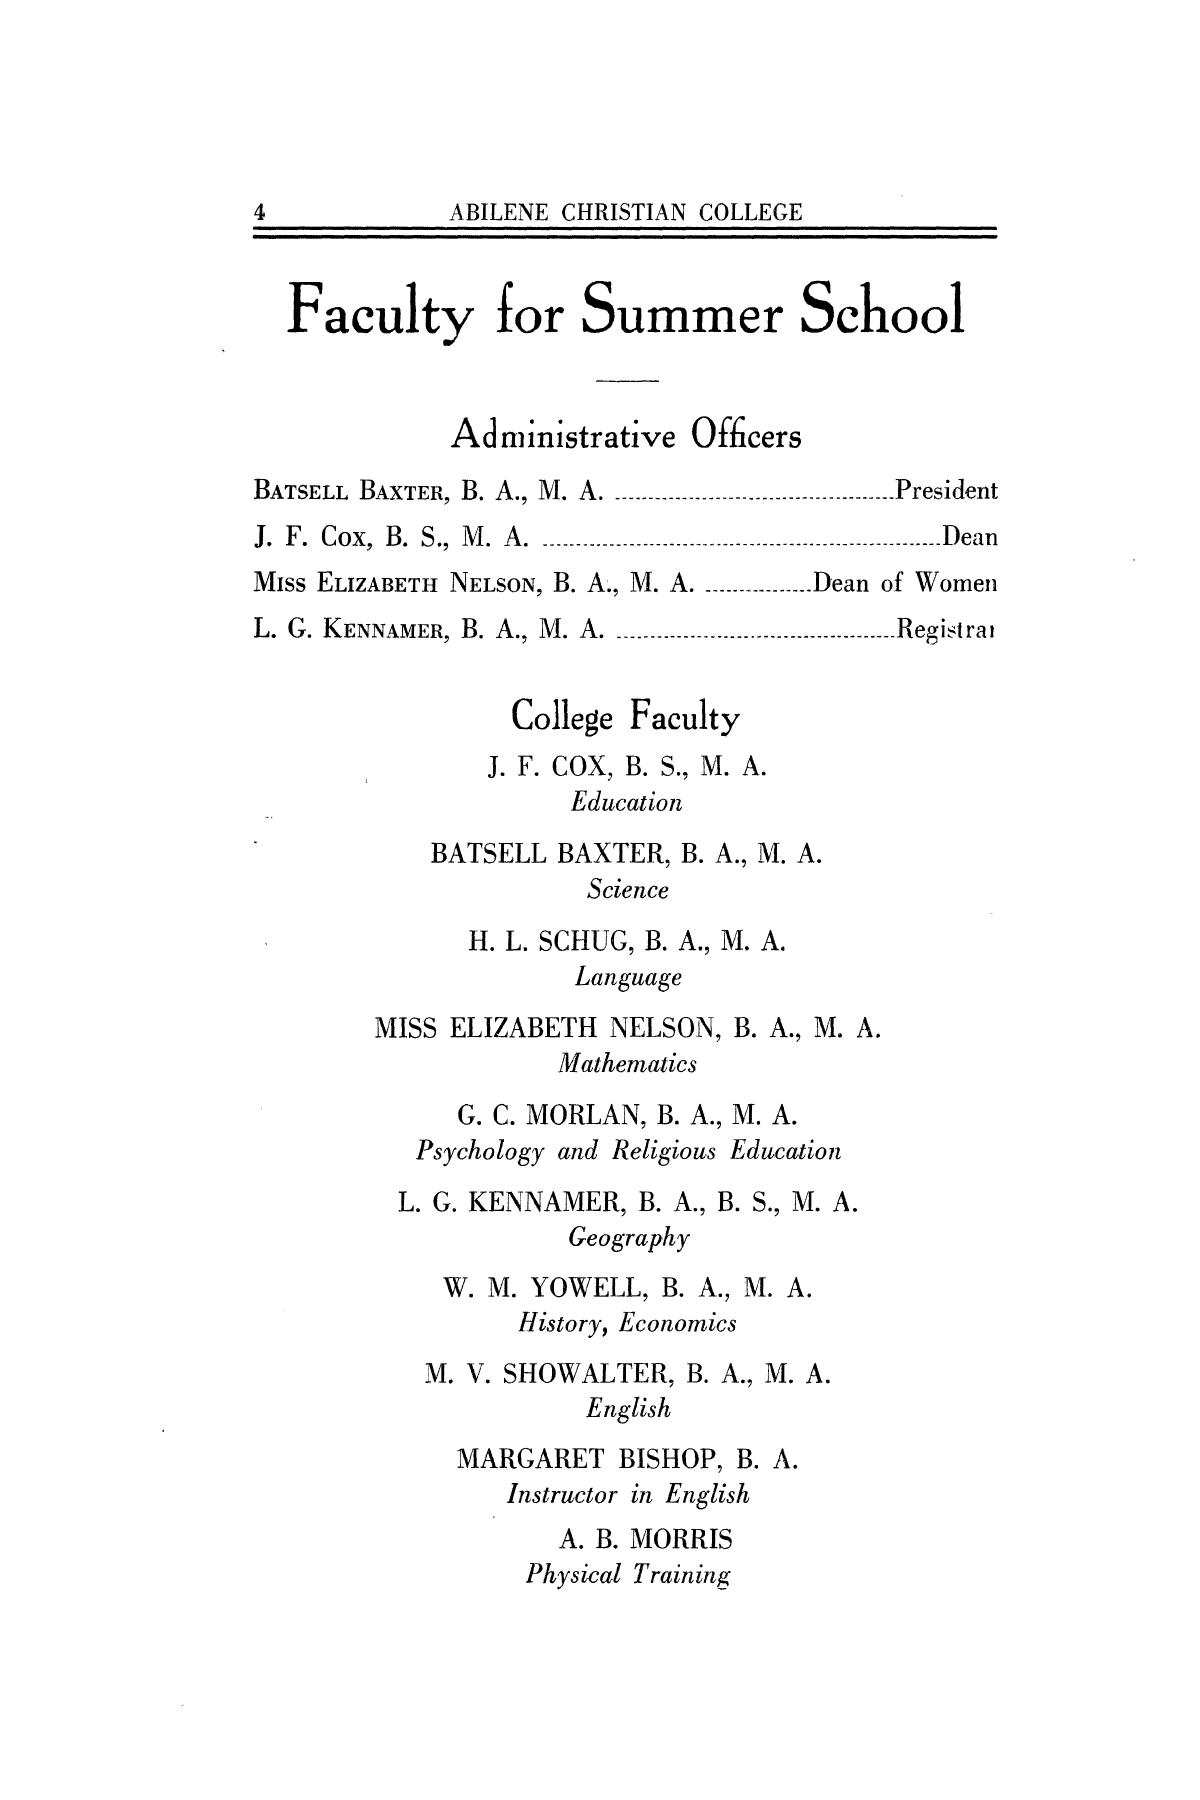 Catalog of Abilene Christian College, 1926
                                                
                                                    4
                                                